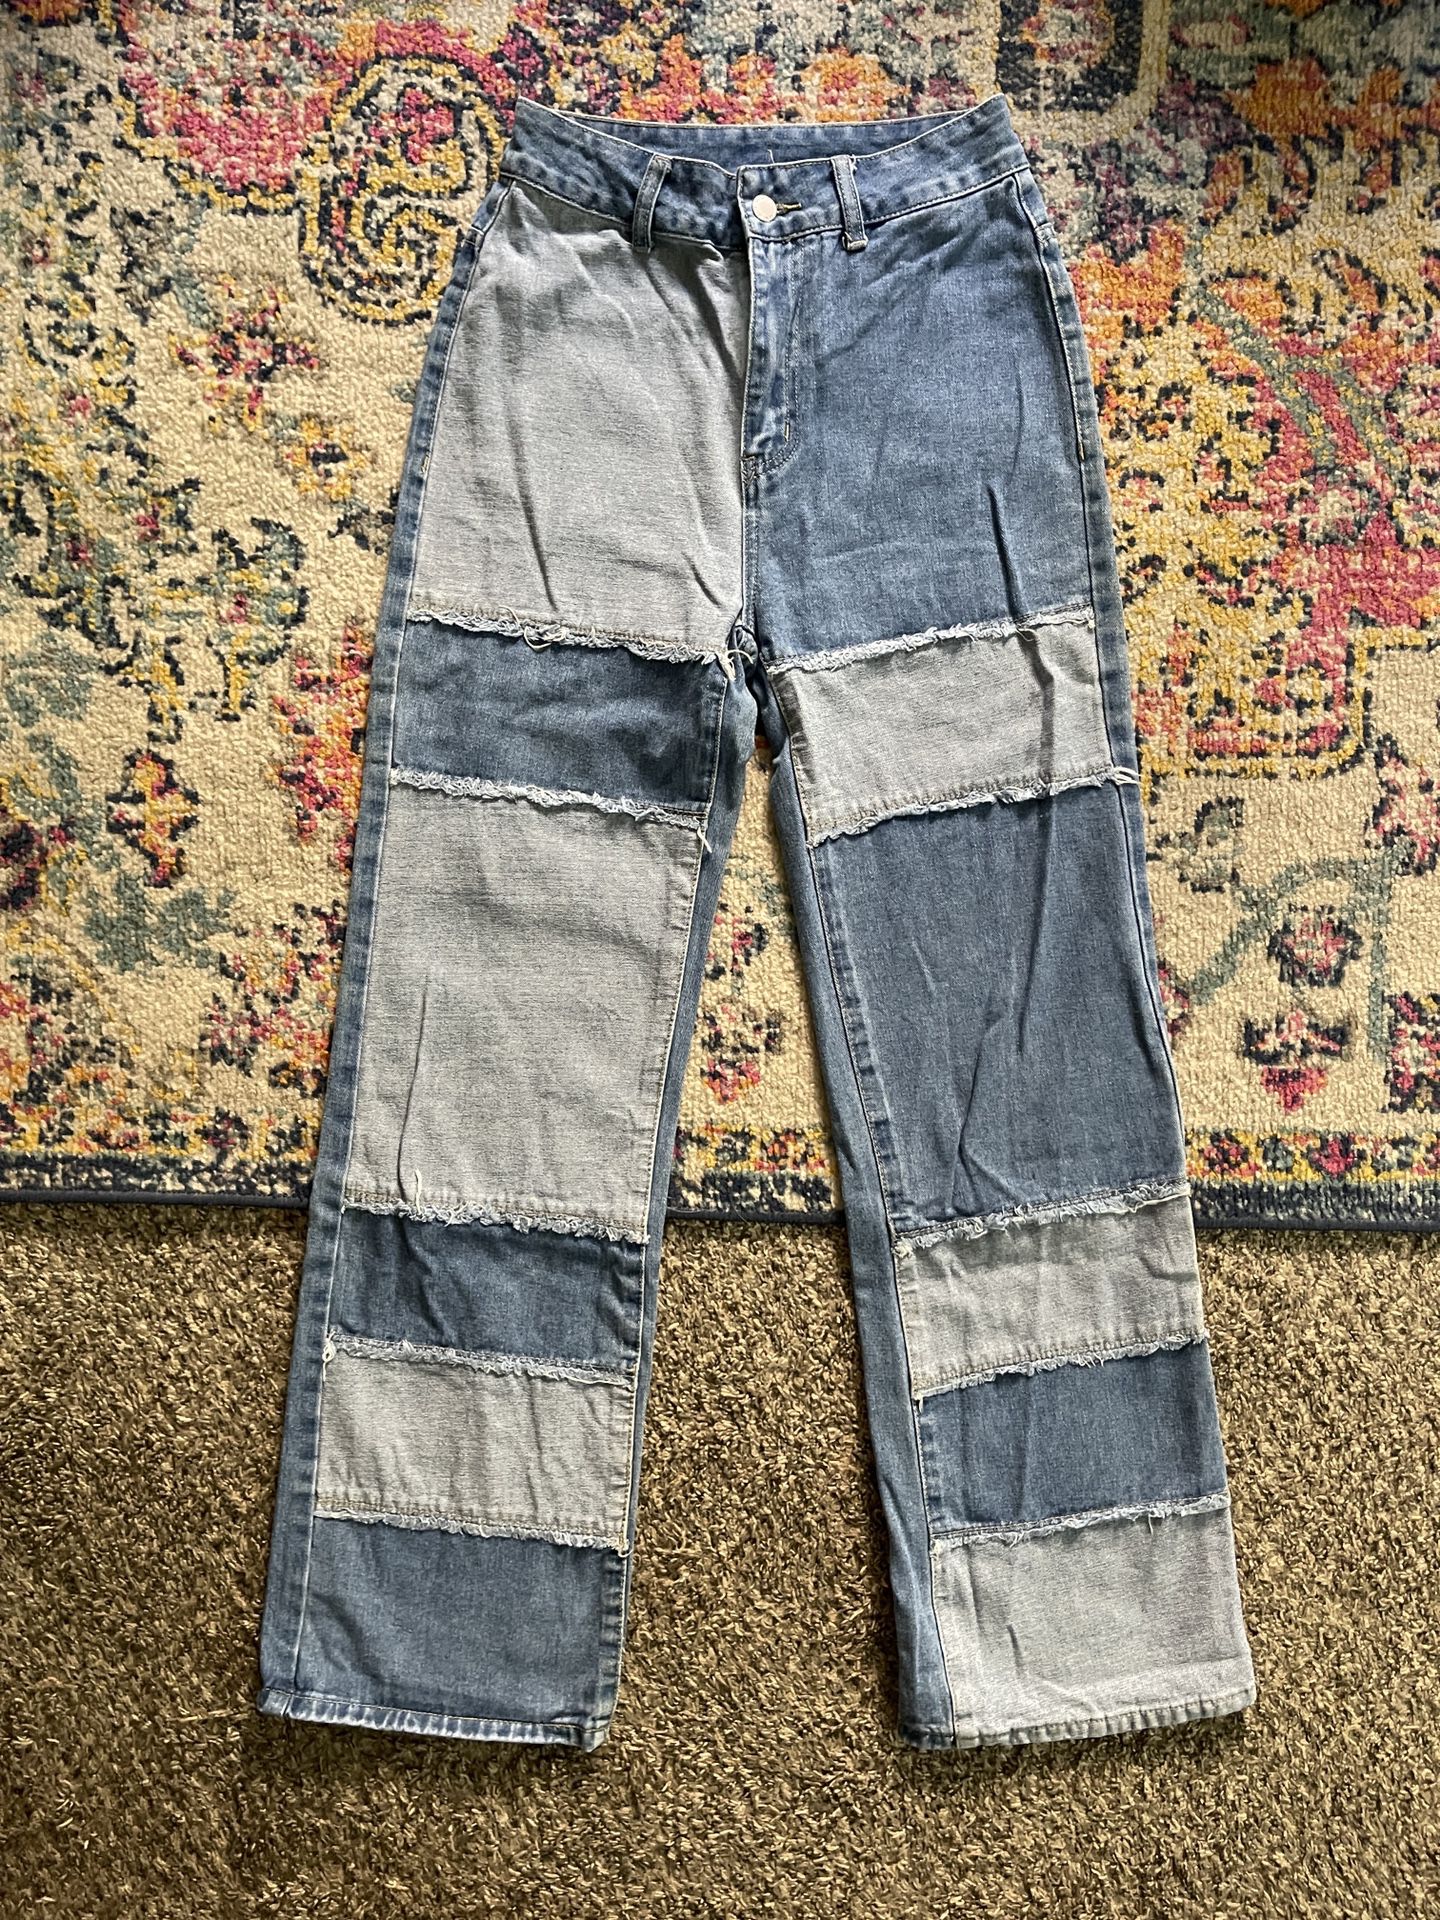 Women Cargo Jeans Size 4 (Women Small)